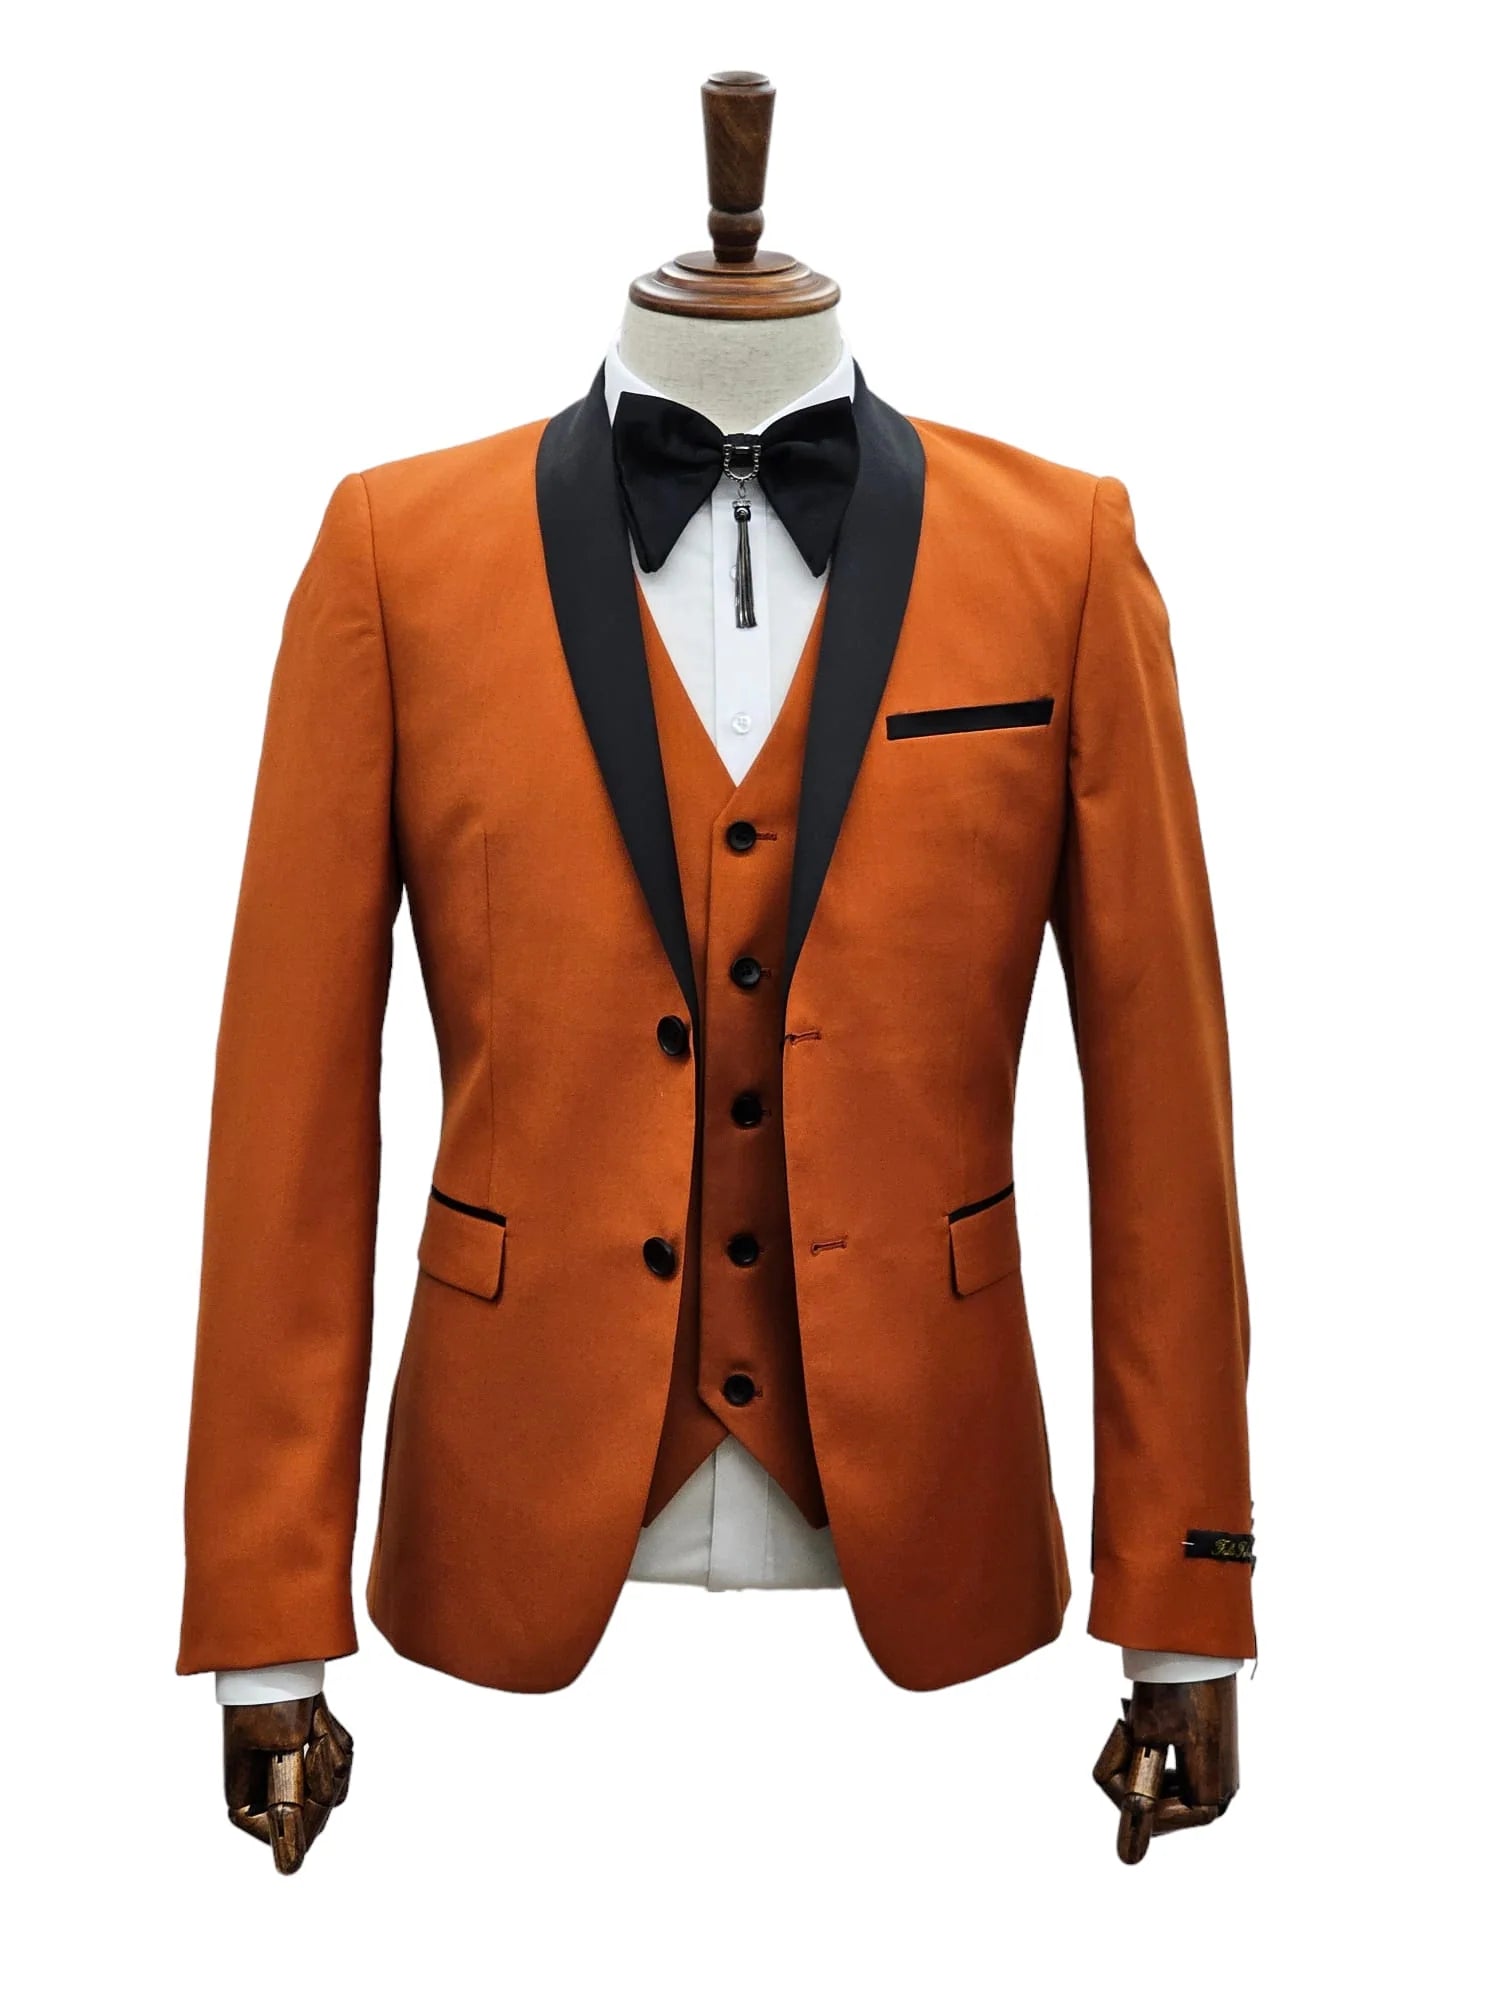 KCT Menswear's rust tuxedo jacket radiates the warmth of autumn elegance.